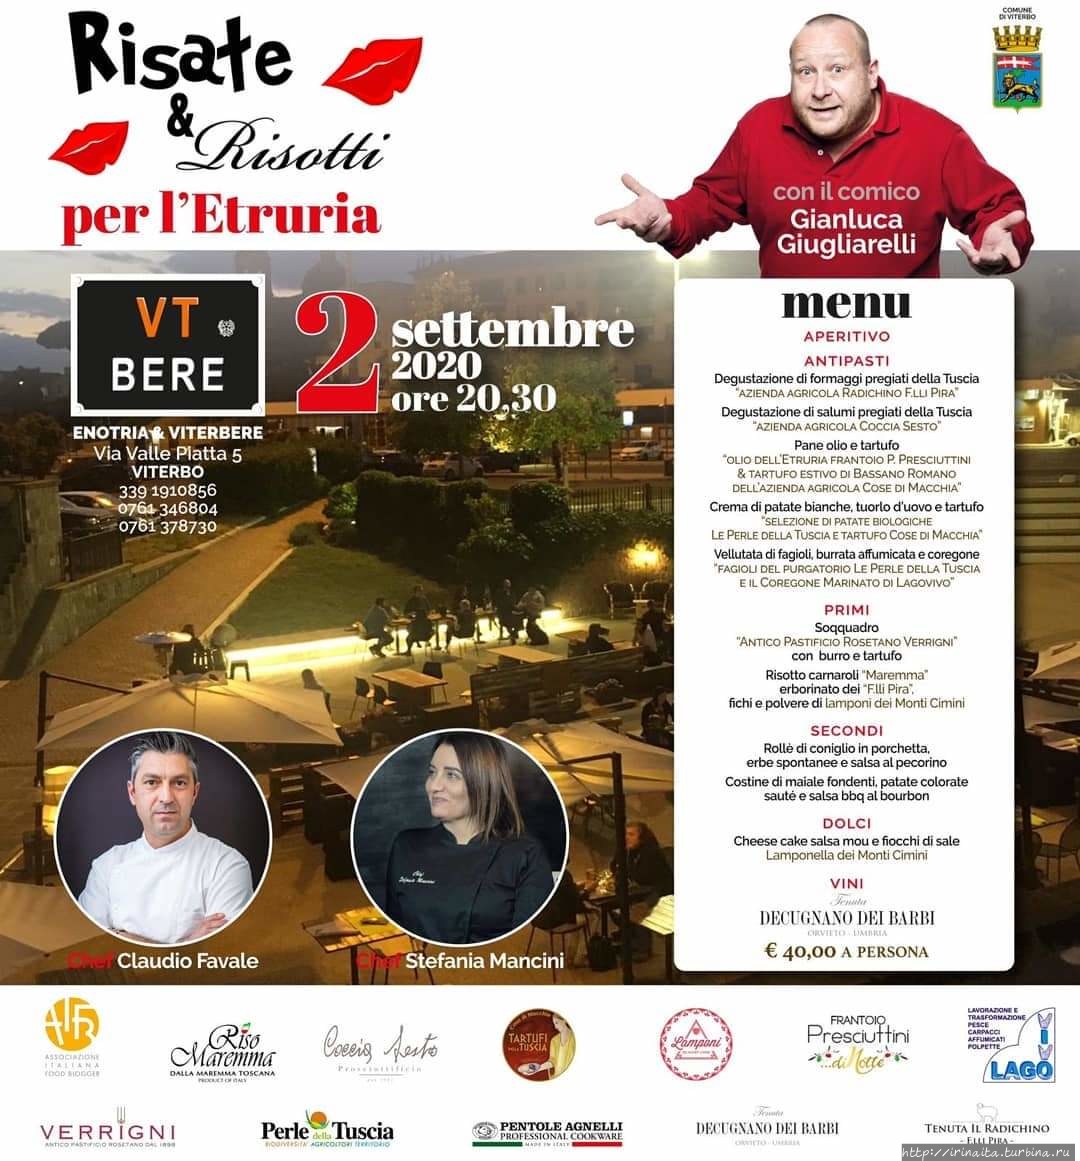 Ждём праздника RISATE&RISOTTI, 2 сентября в Витербо Витербо, Италия